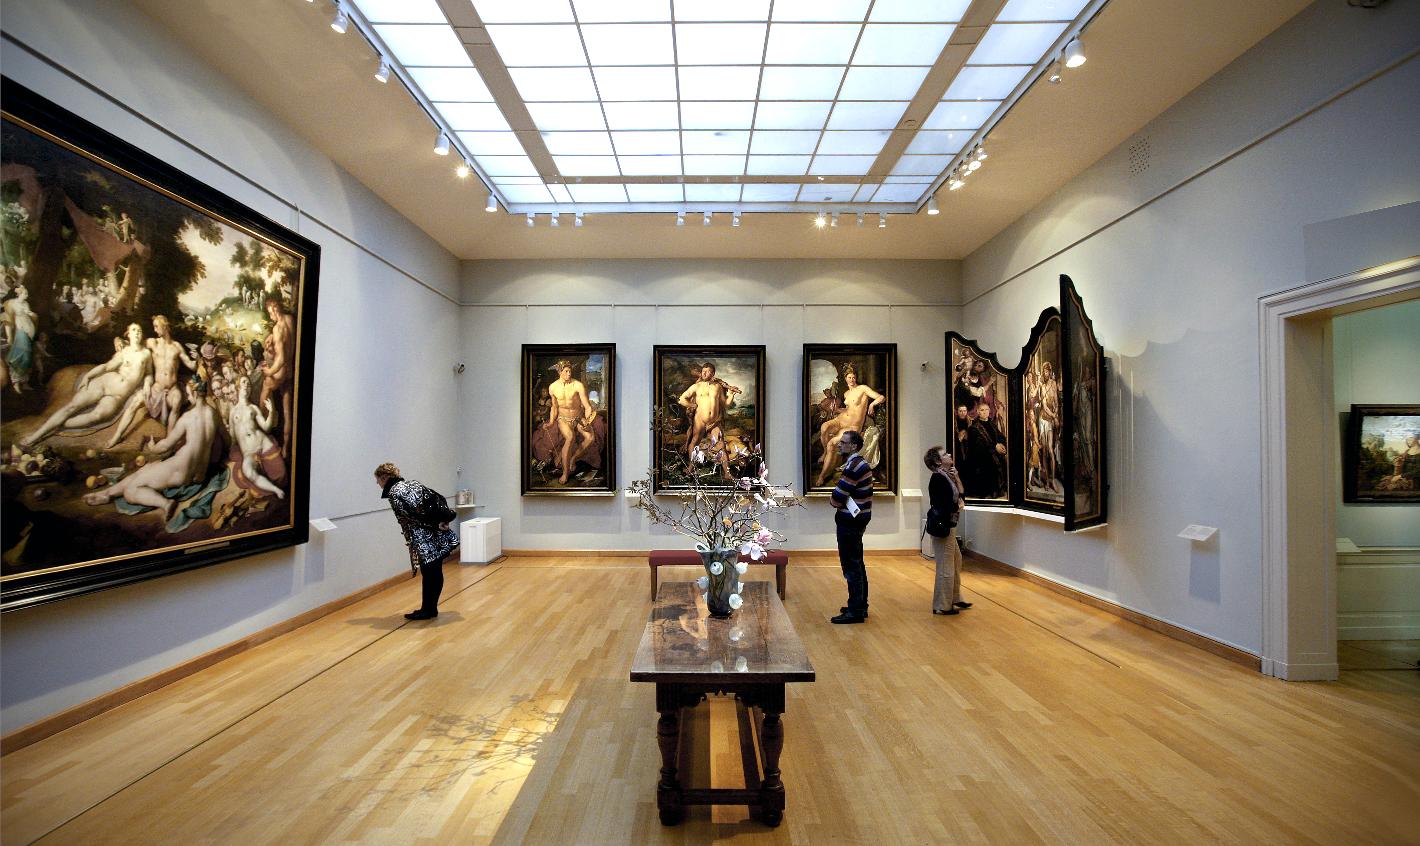 Photo Frans Hals Museum - Hof in Haarlem, View, Museums & galleries - #1